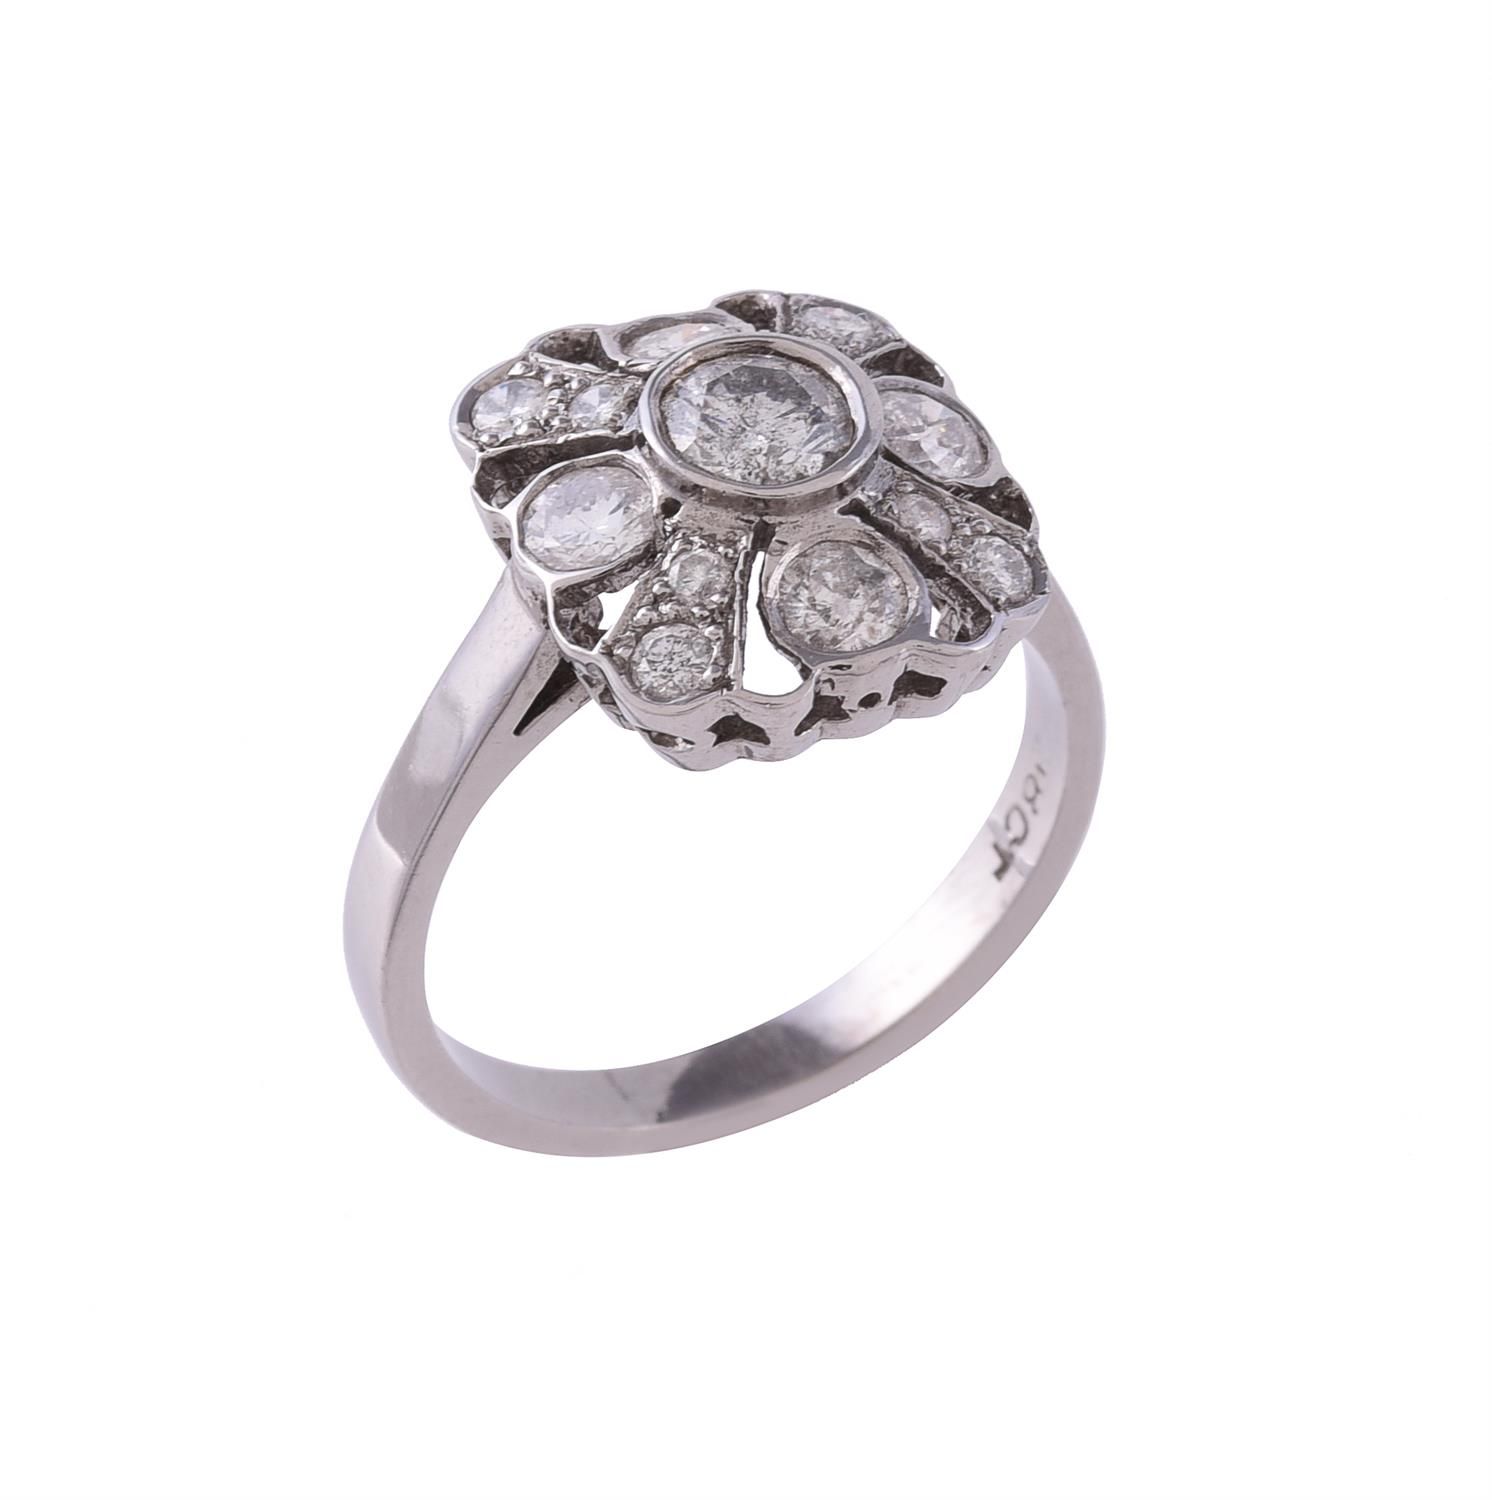 A diamond panel ring 镶钻戒指，长方形穿孔镶有明亮式切割钻石，共重约0.92克拉，印有18克拉，手指尺寸为O，总重4.9克。